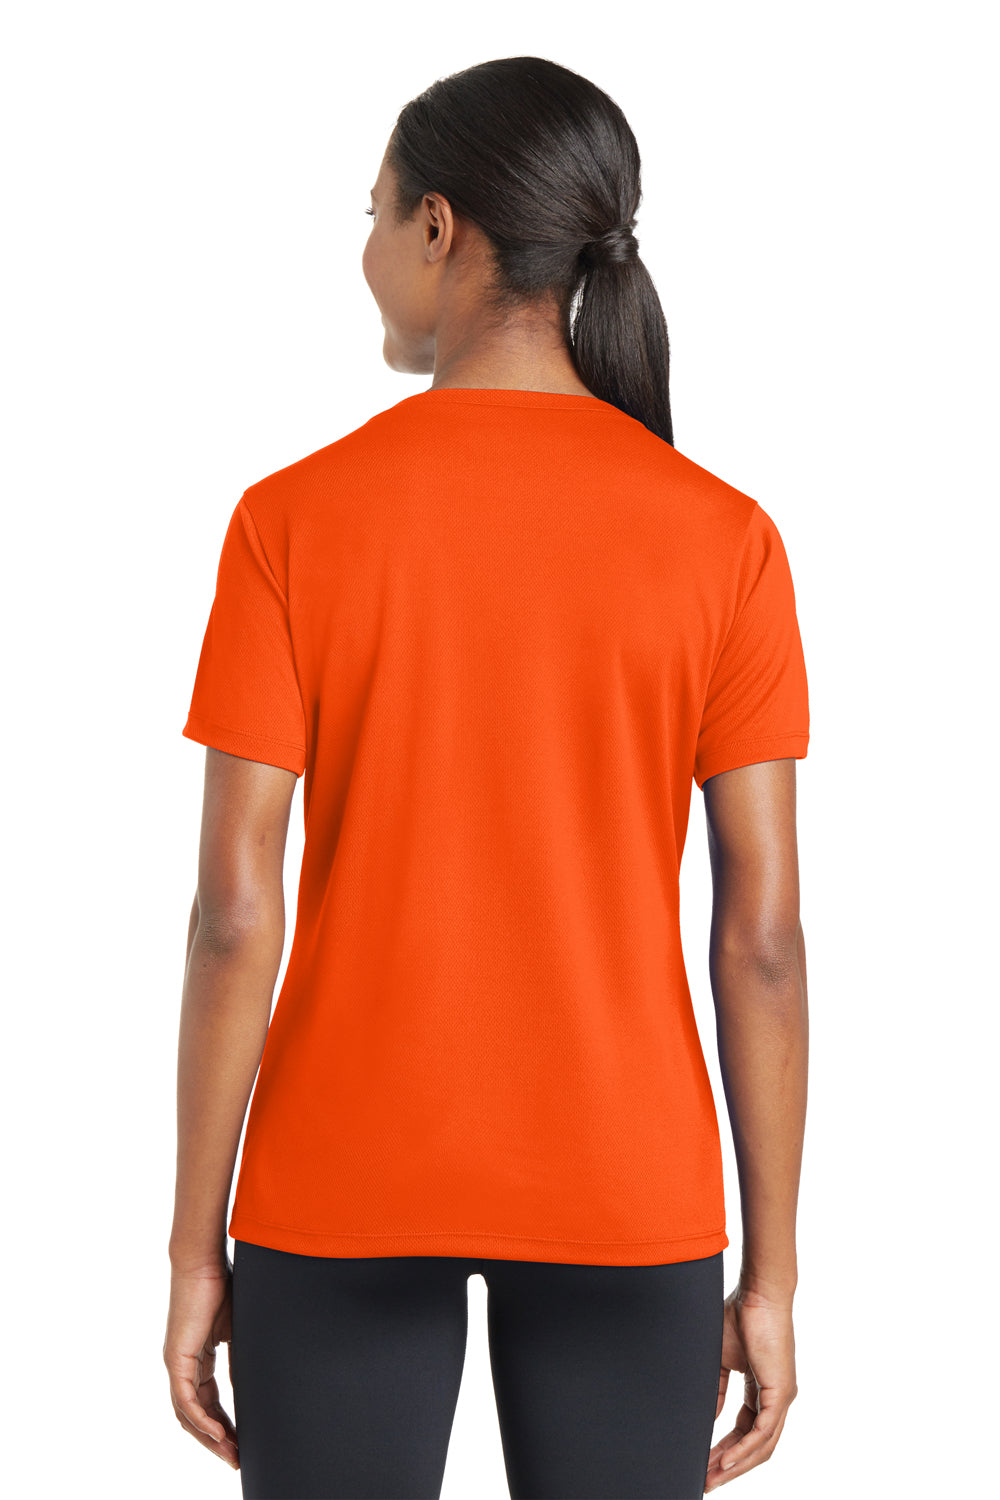 Sport-Tek LST340 Womens RacerMesh Moisture Wicking Short Sleeve V-Neck T-Shirt Neon Orange Back